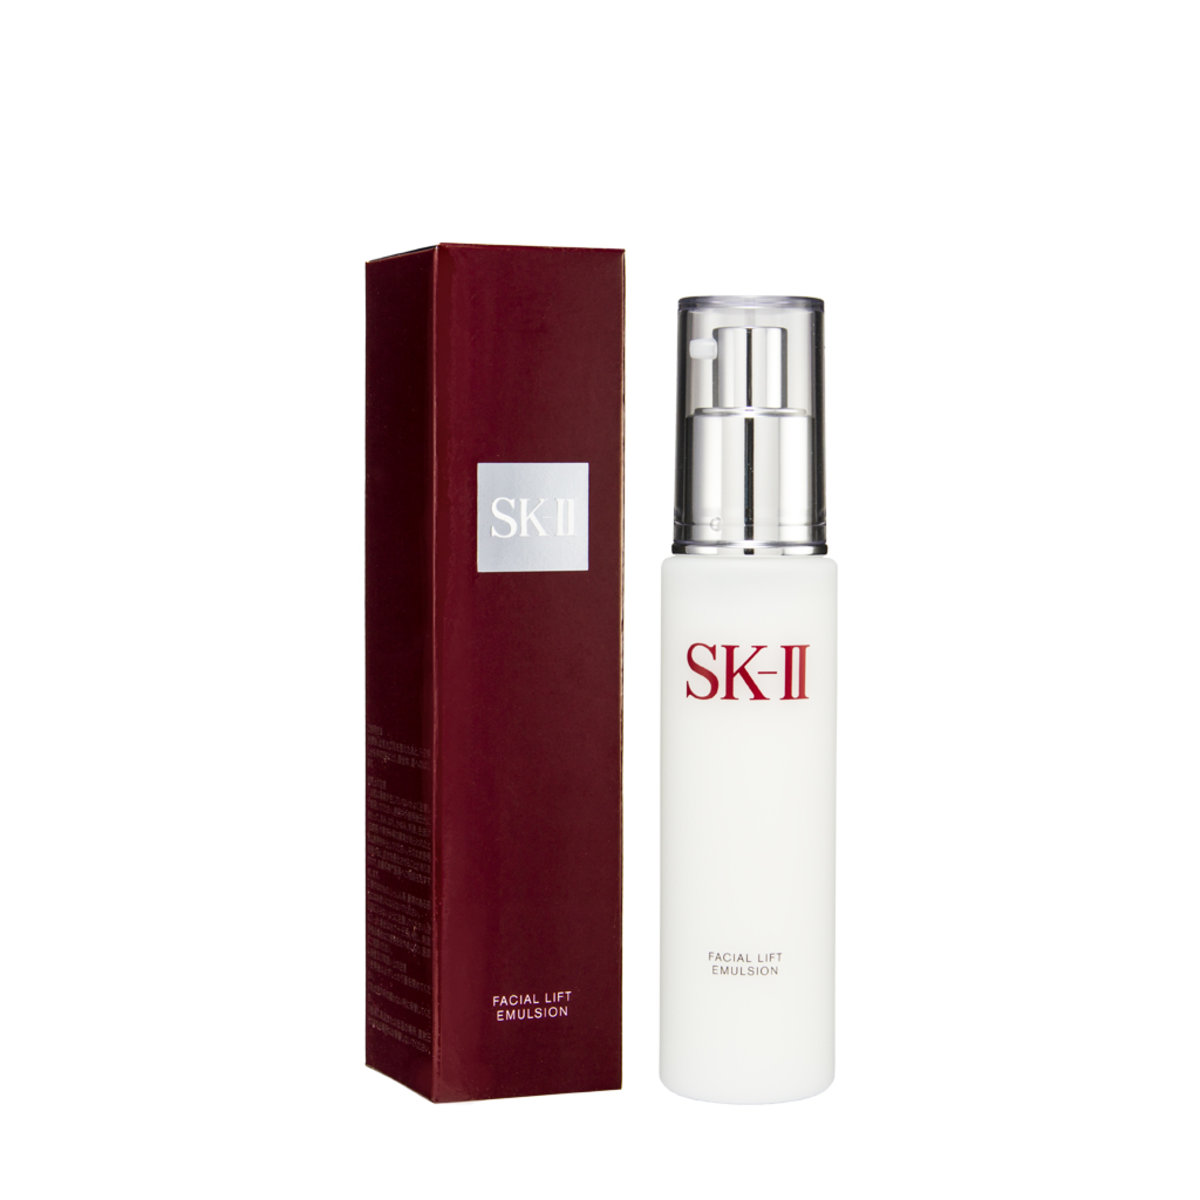 SK-II Facial Lift Emulsion (100g)